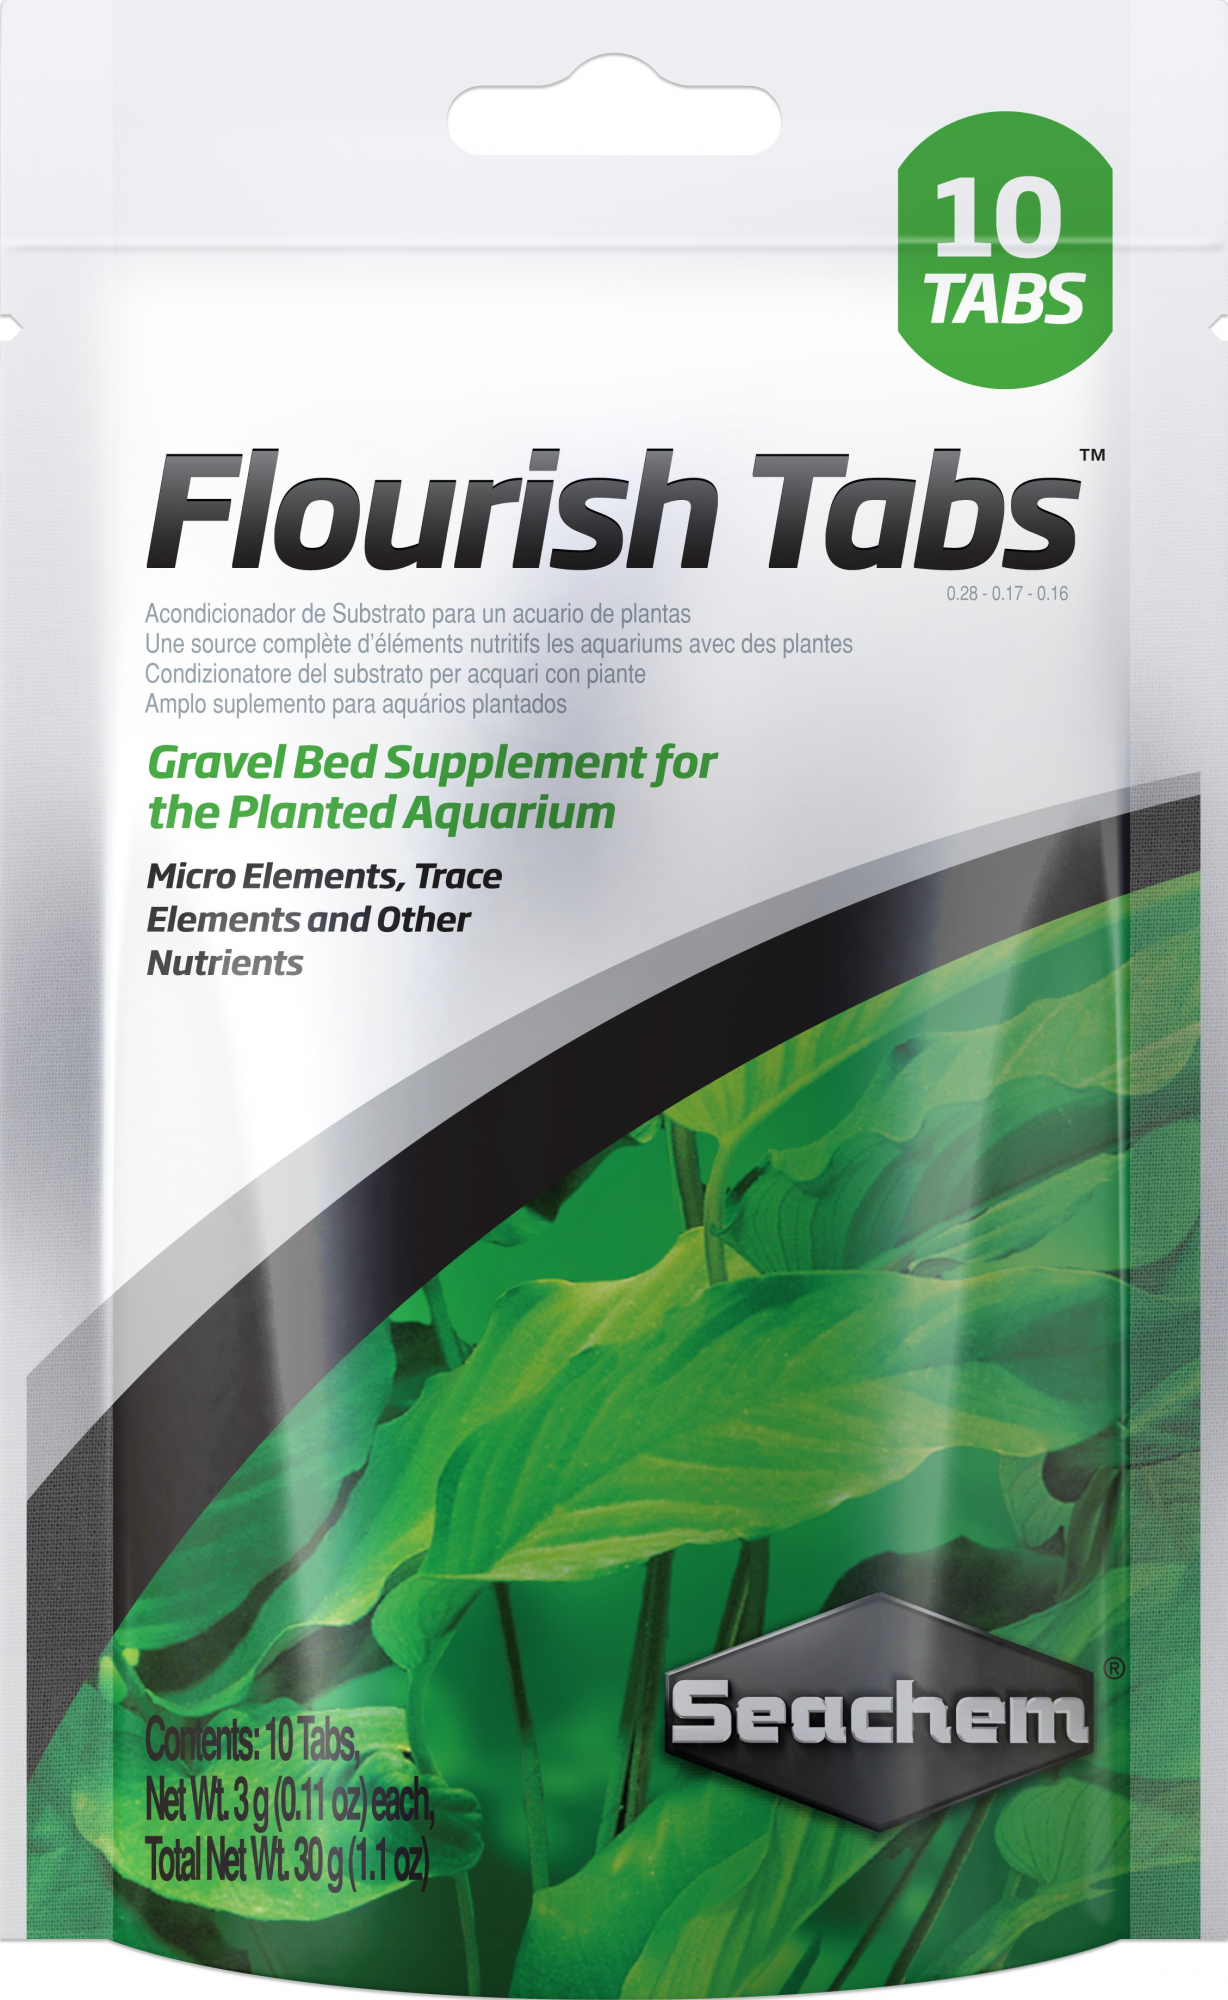 FlourishTabs estimulador de crescimento de plantas de aquário